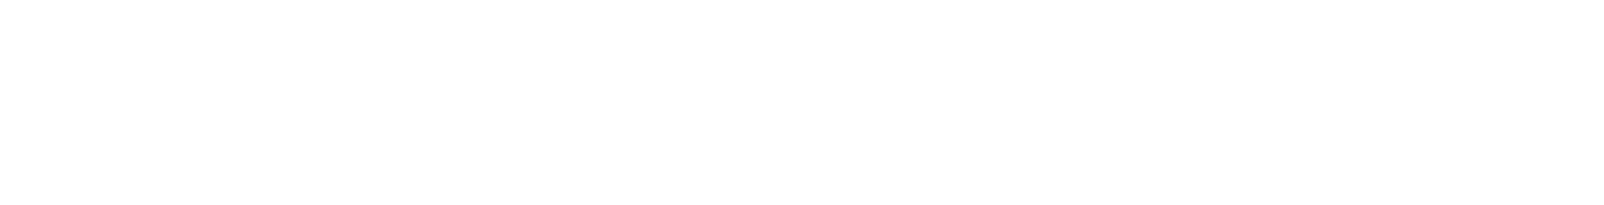 LPL Financial
 logo large for dark backgrounds (transparent PNG)